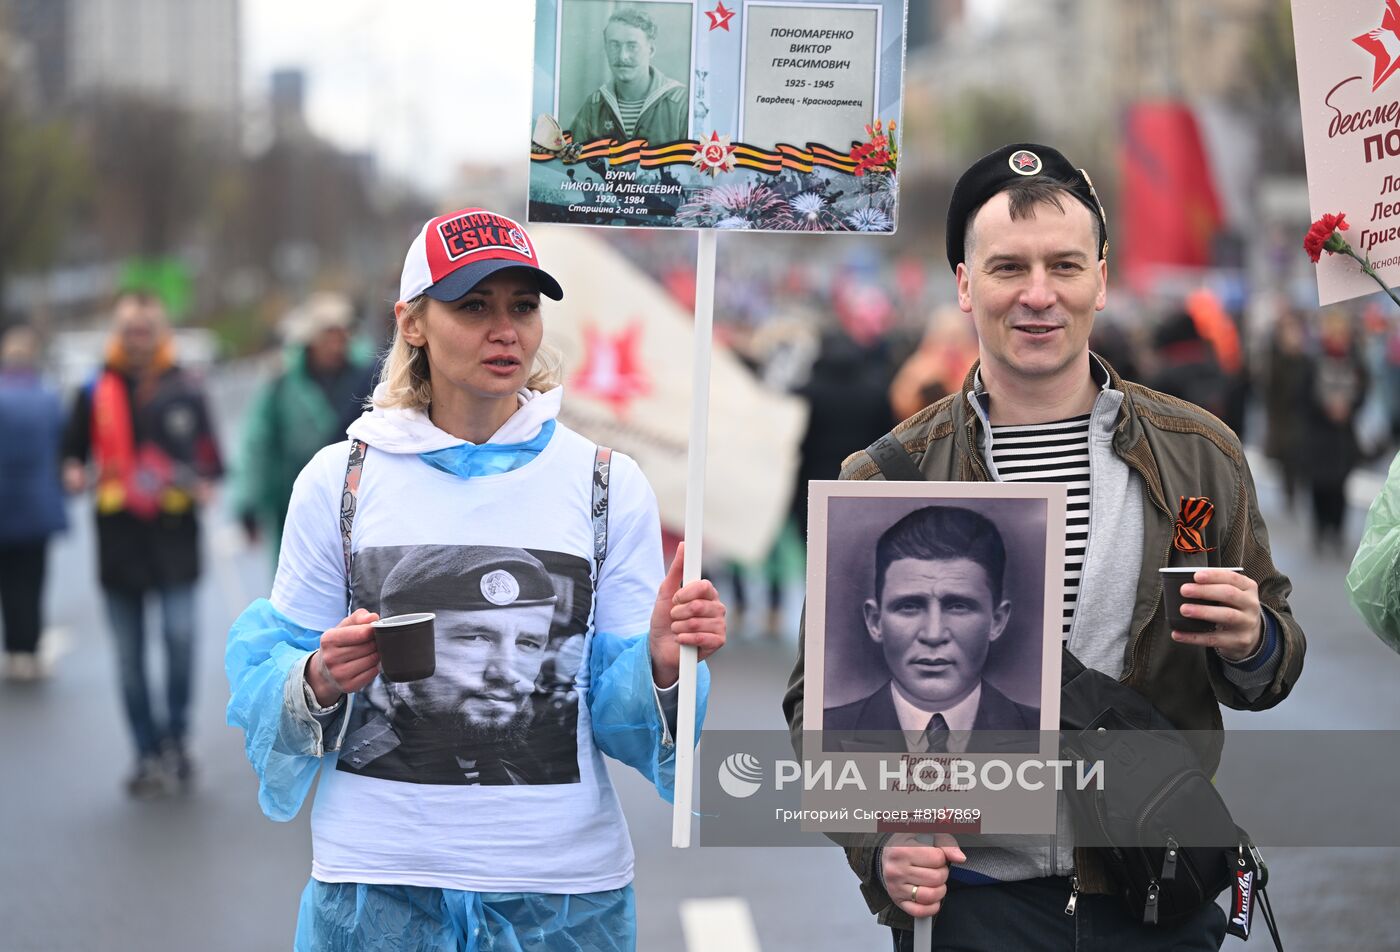 Шествие "Бессмертный полк" в Москве